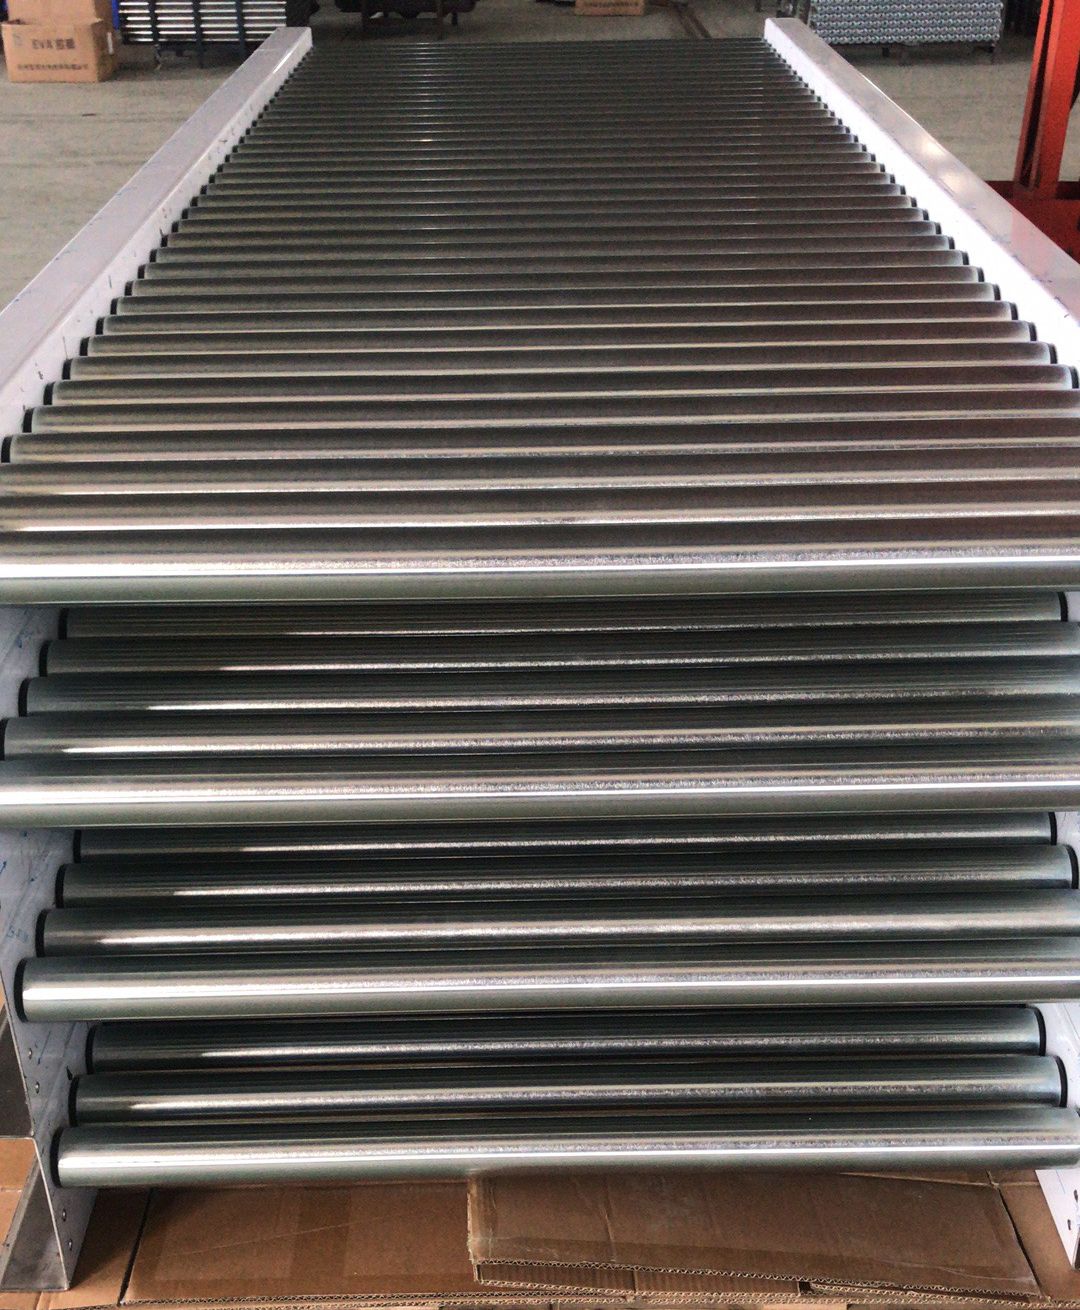 16'' Overall Width Galvanized Steel Gravity Roller Conveyor